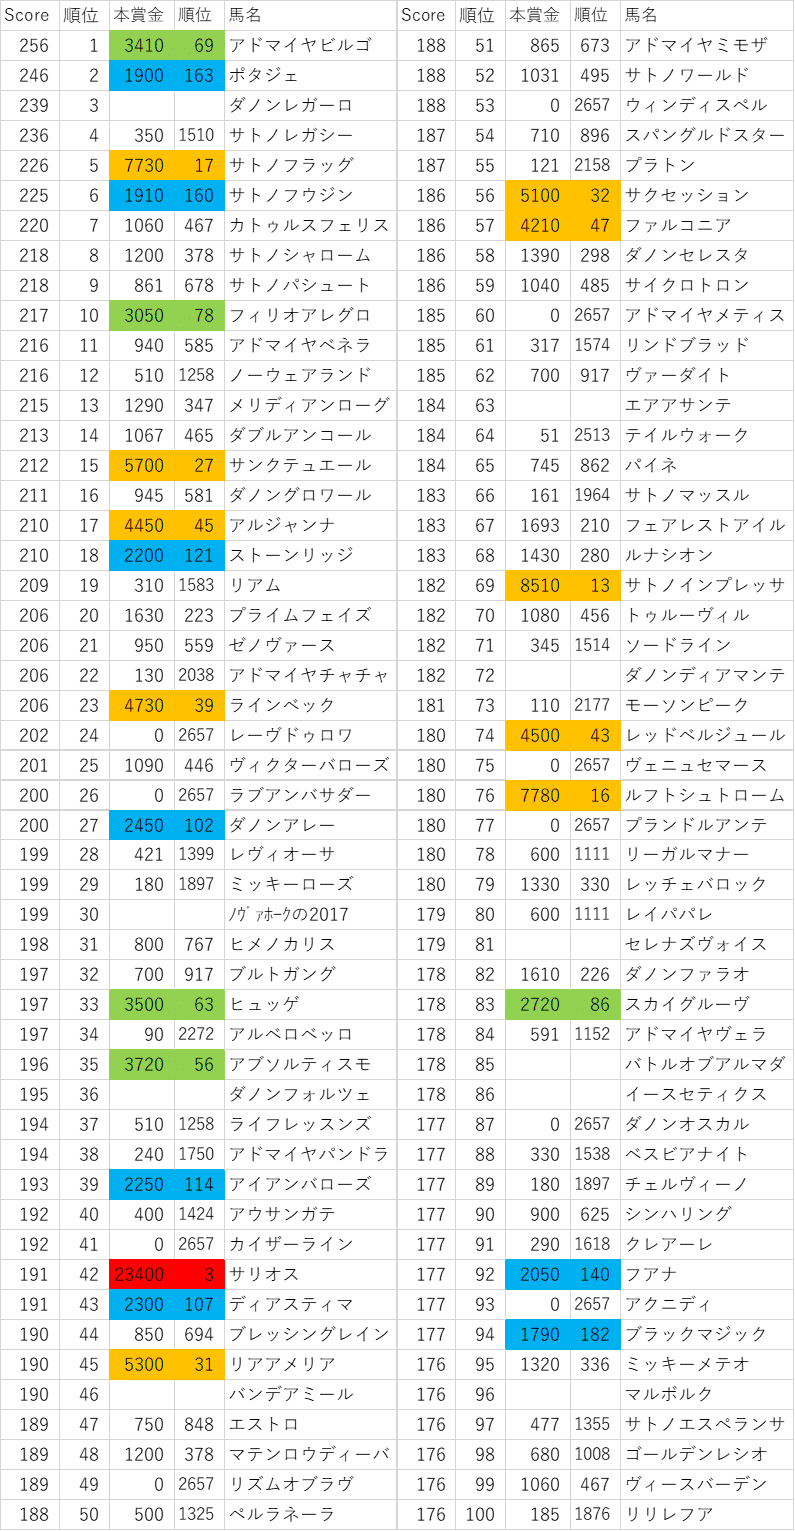 2017年産駒スコア1~100位